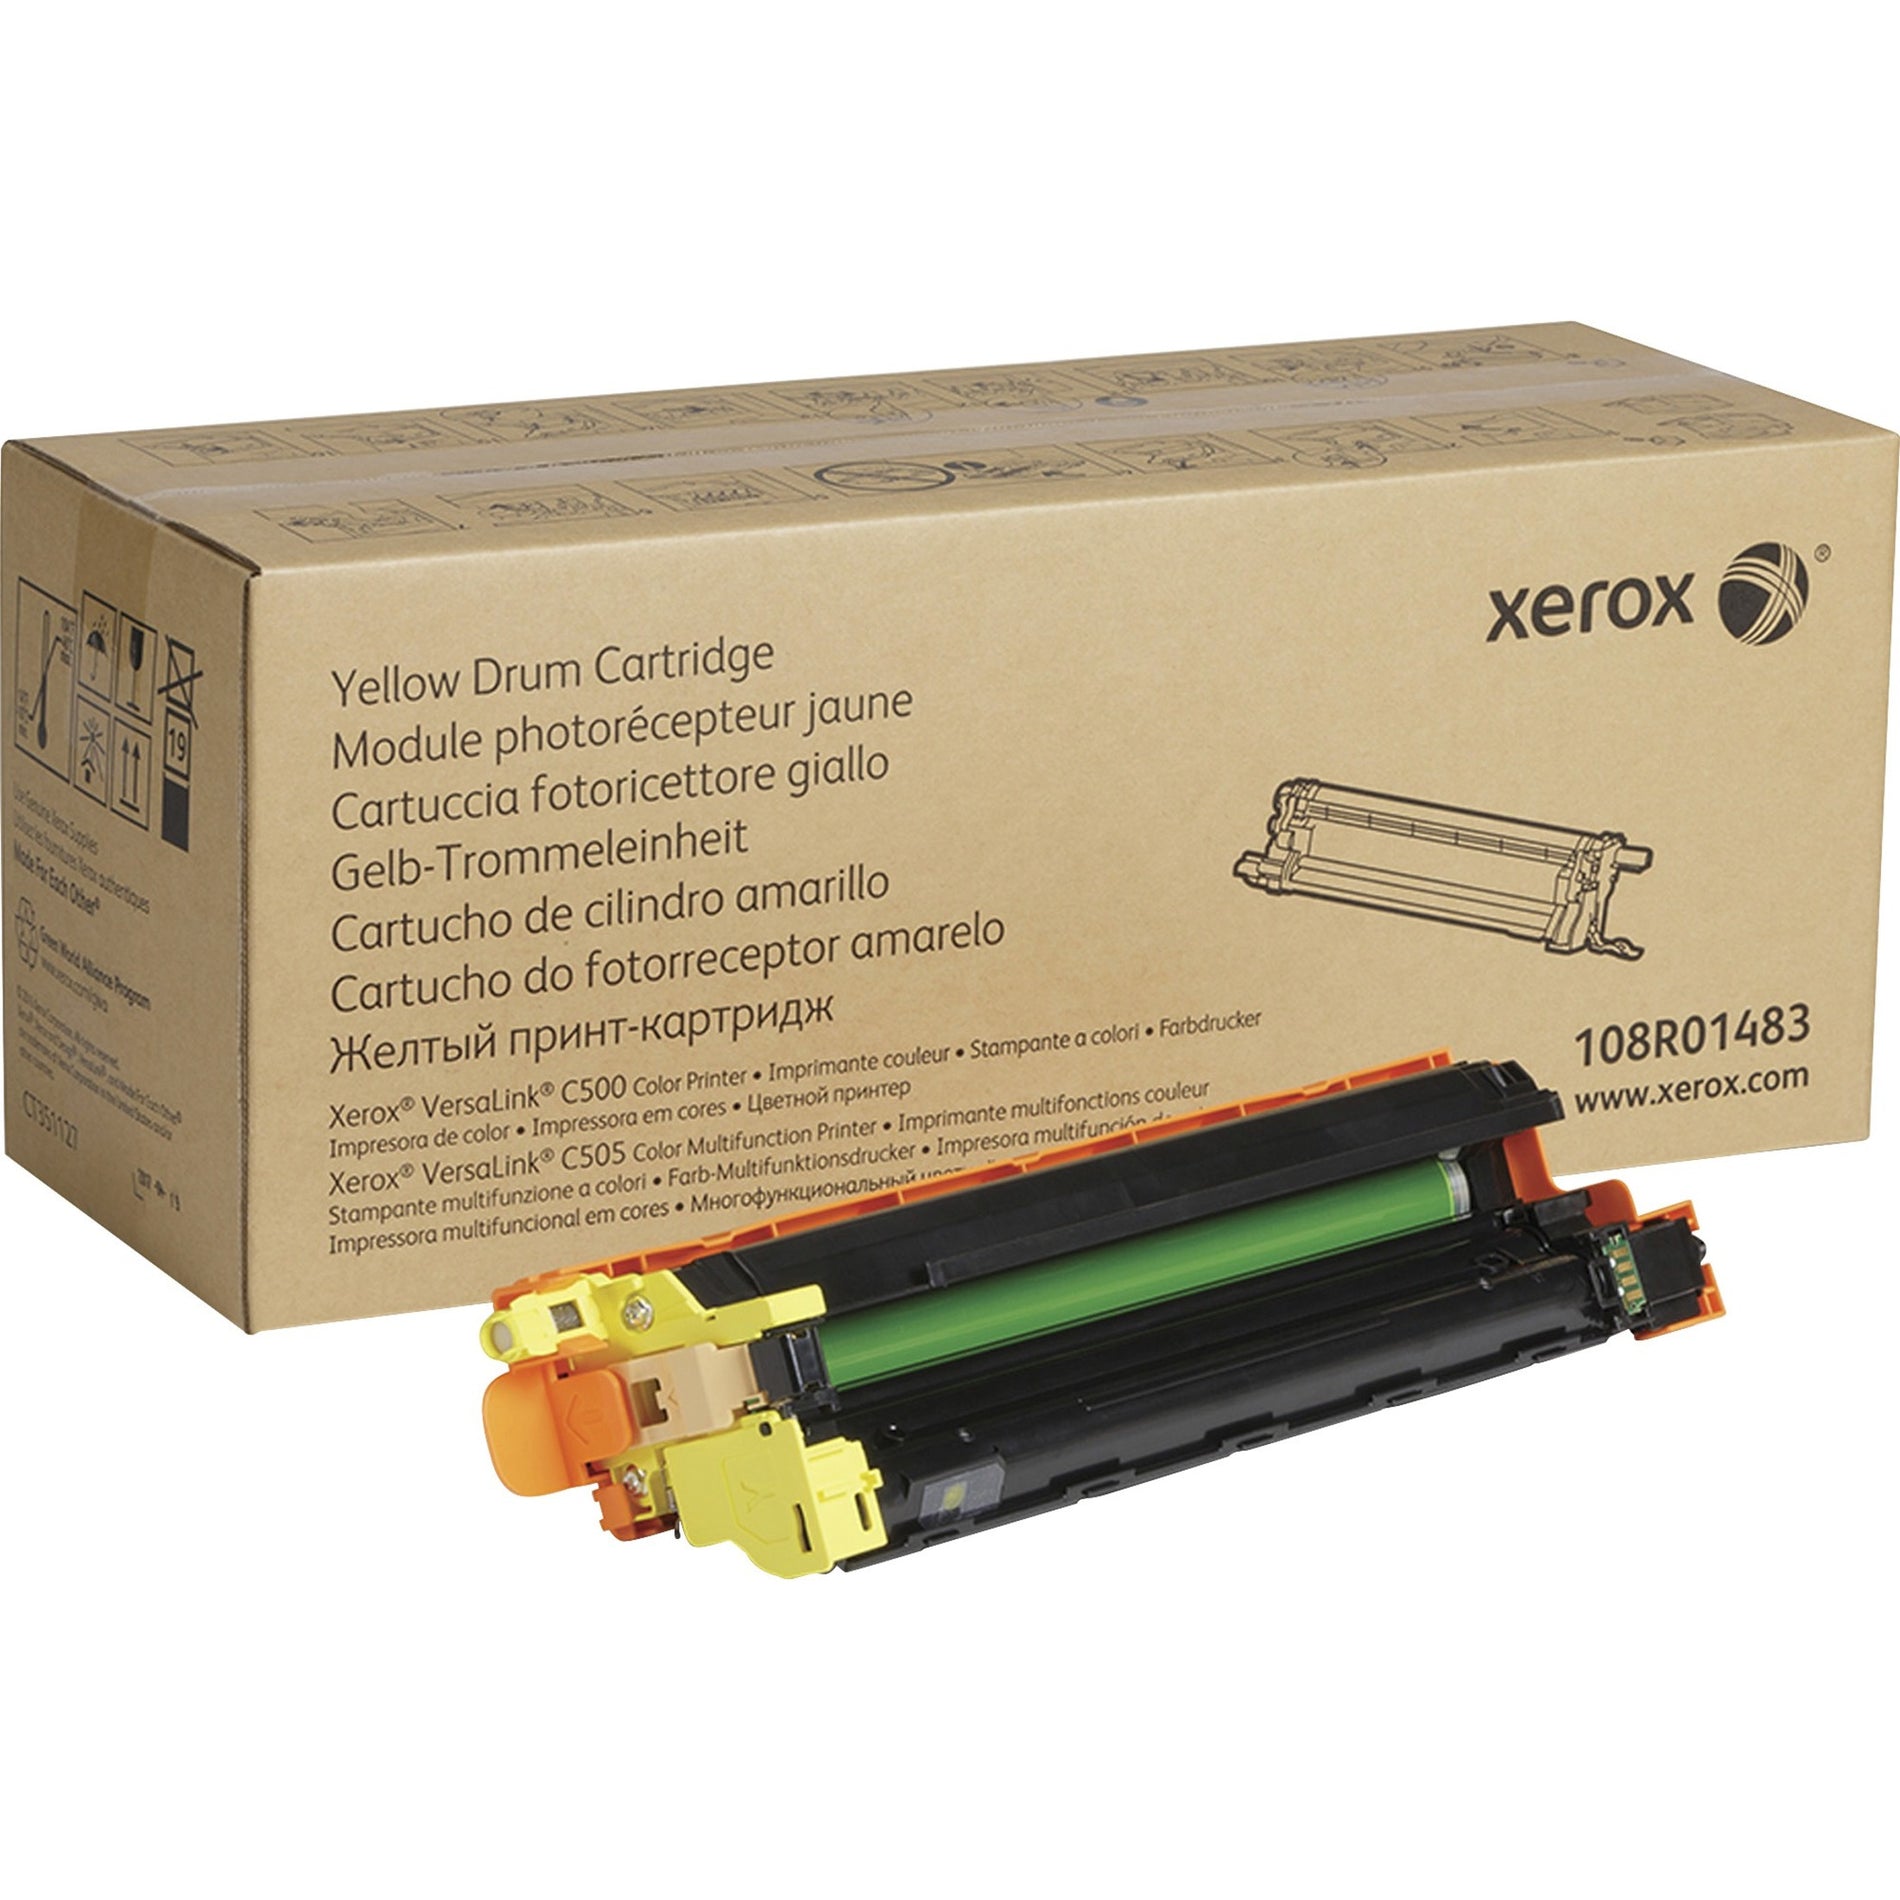 Xerox 108R01483 VersaLink C500/C505 Drum Cartridge, Yellow, 40,000 Page Yield